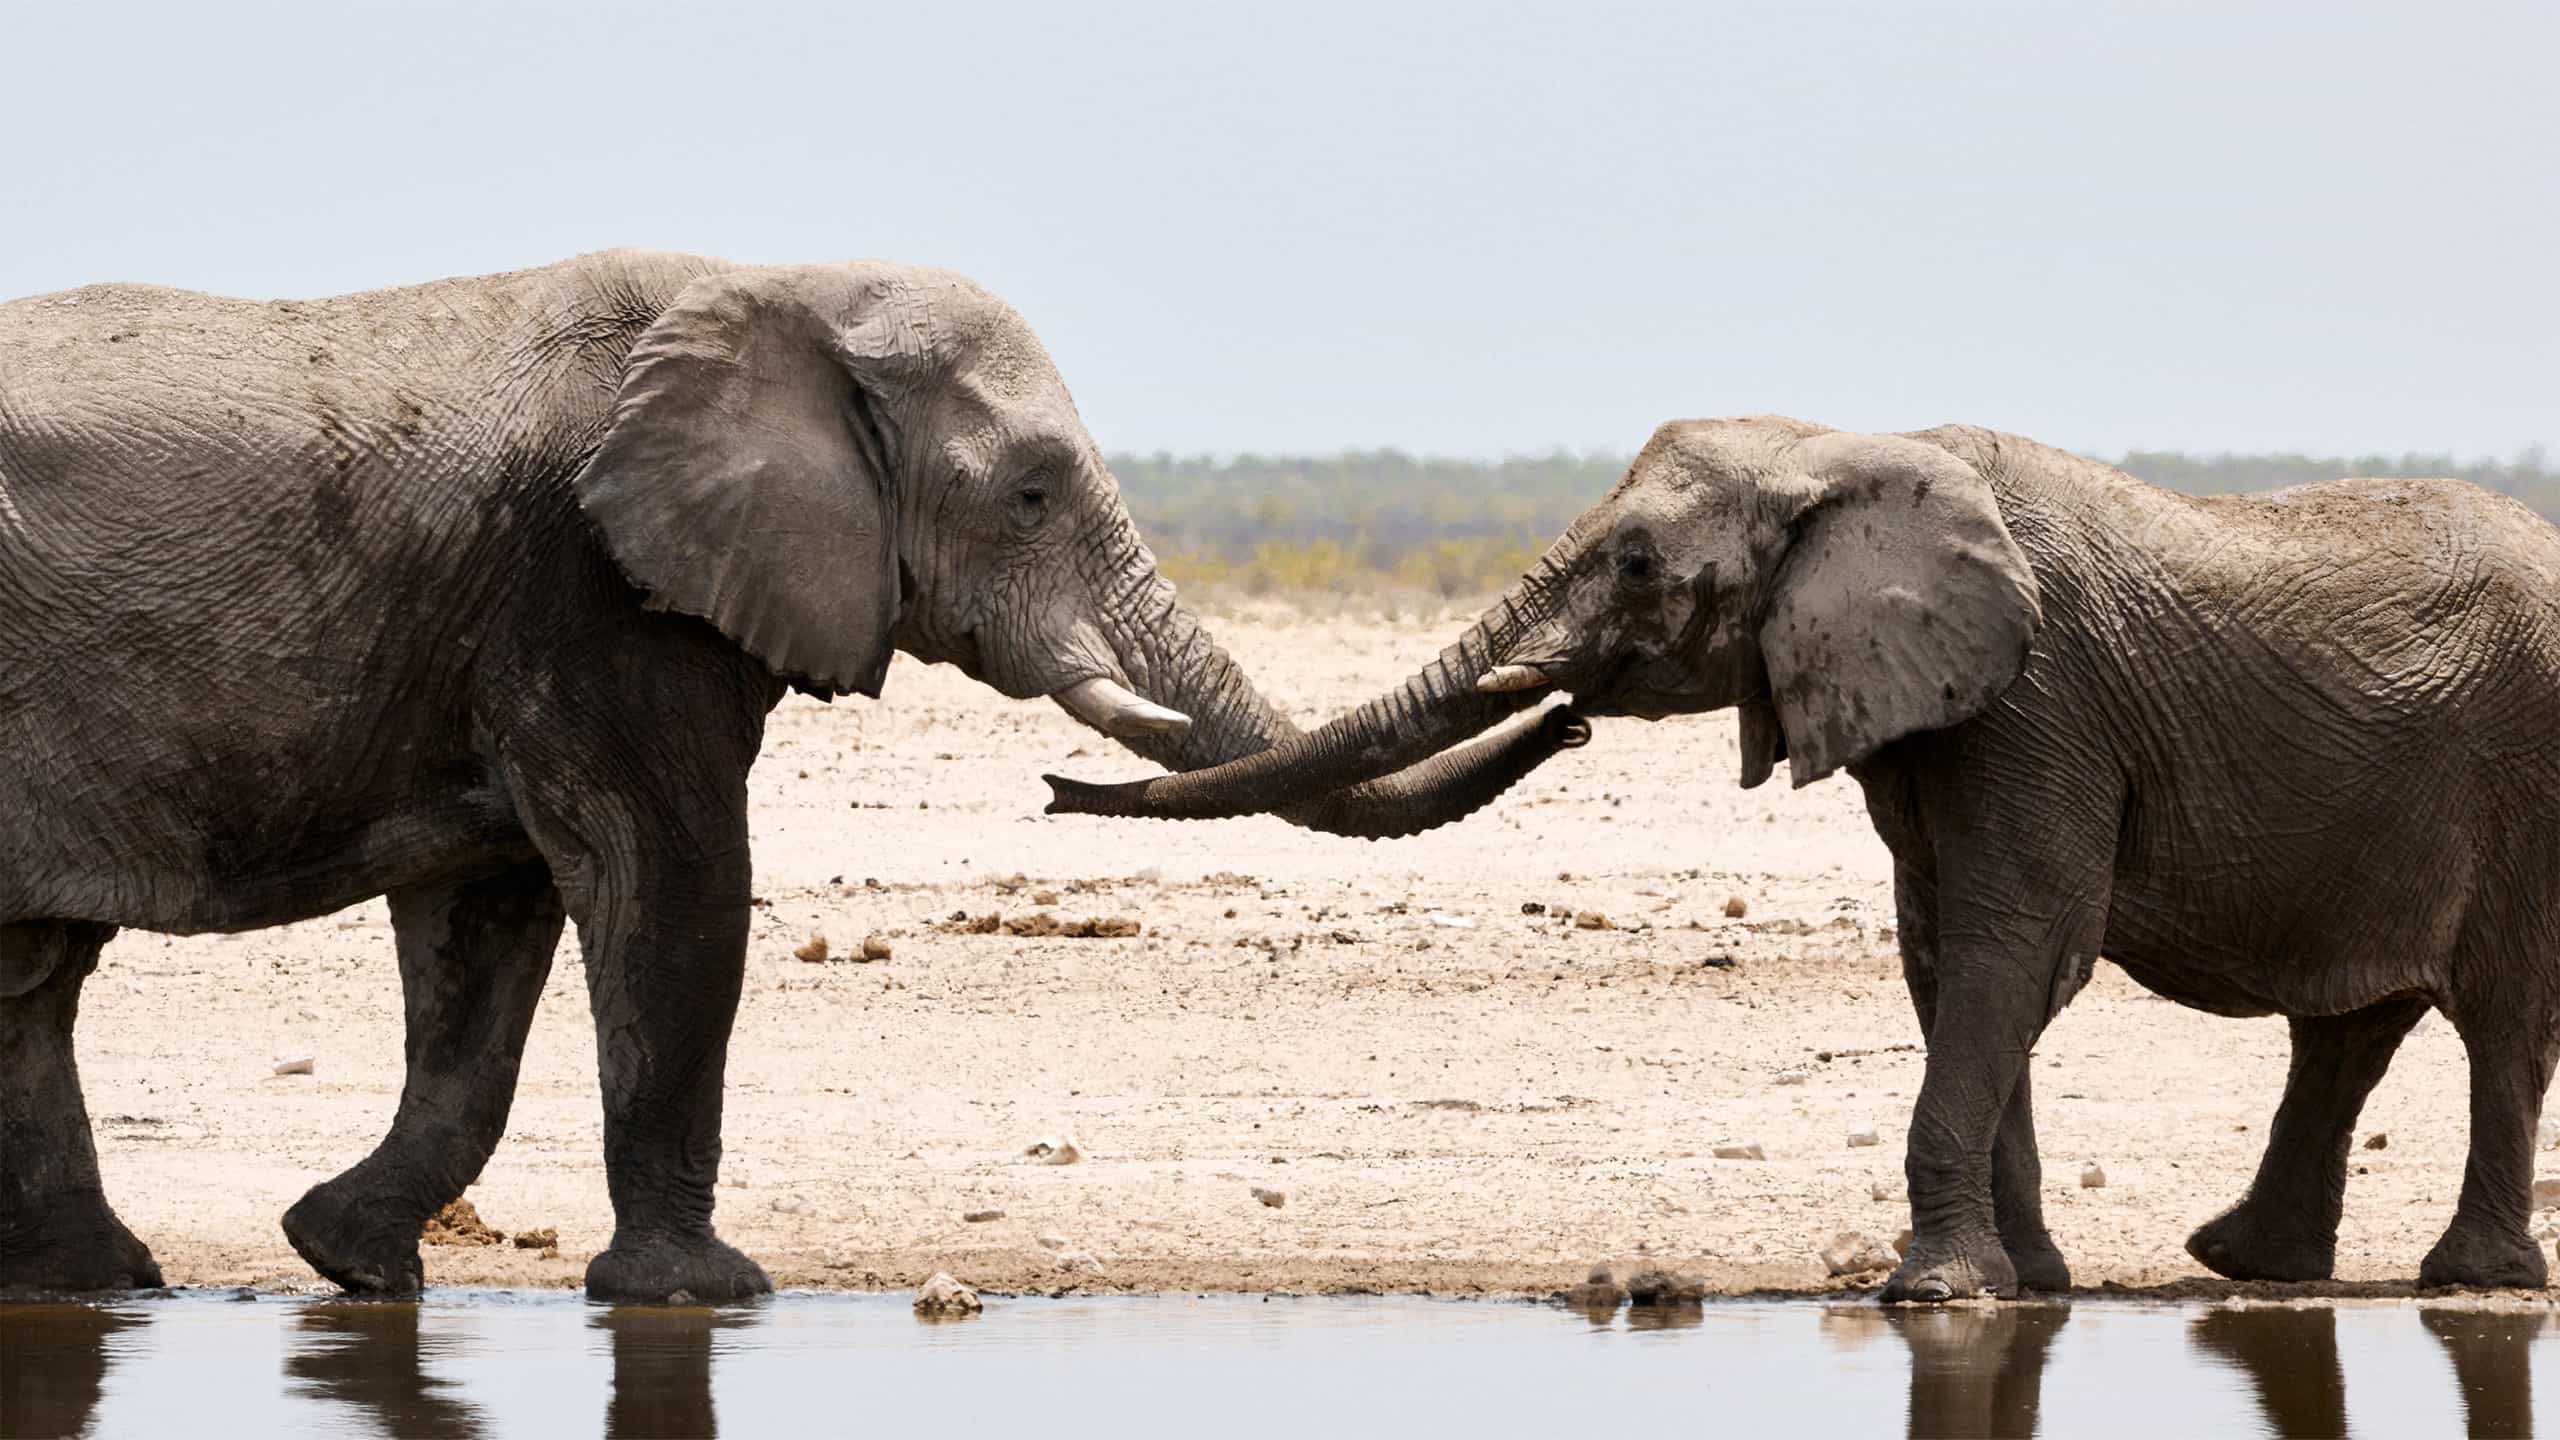 Elephants socializing